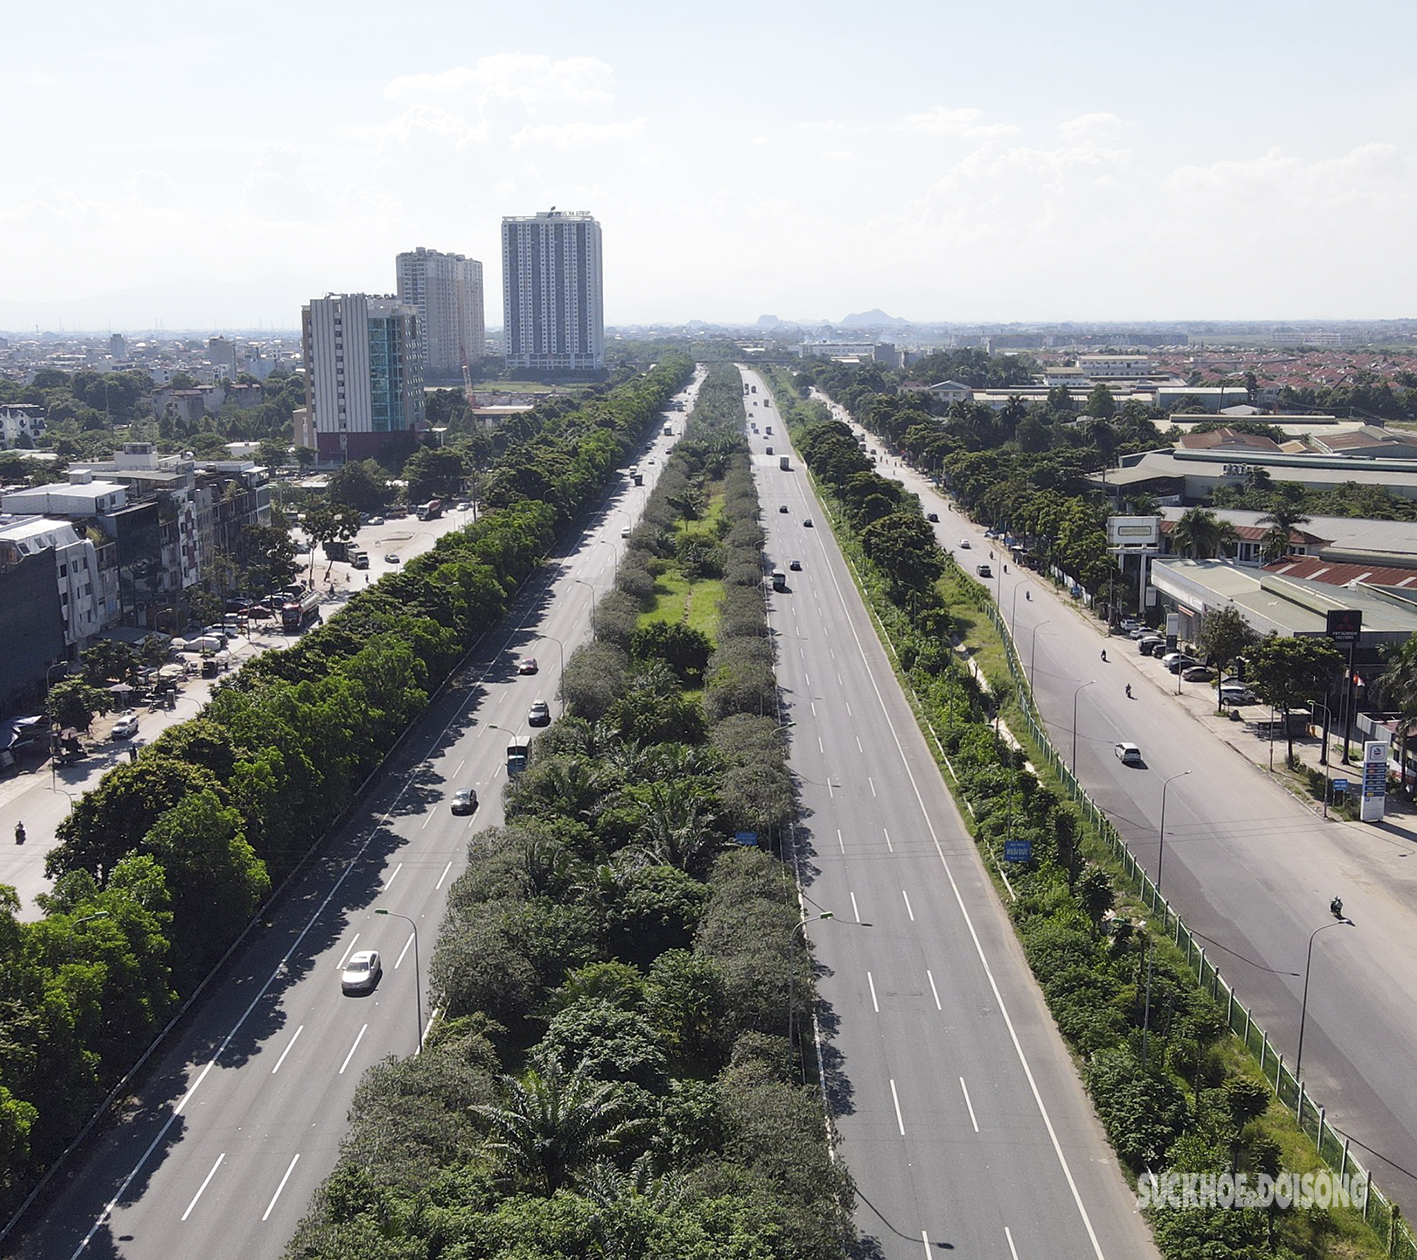 Đại lộ hiện đại nhất Việt Nam nhìn từ trên cao như một khu 'rừng tái sinh' - Ảnh 6.